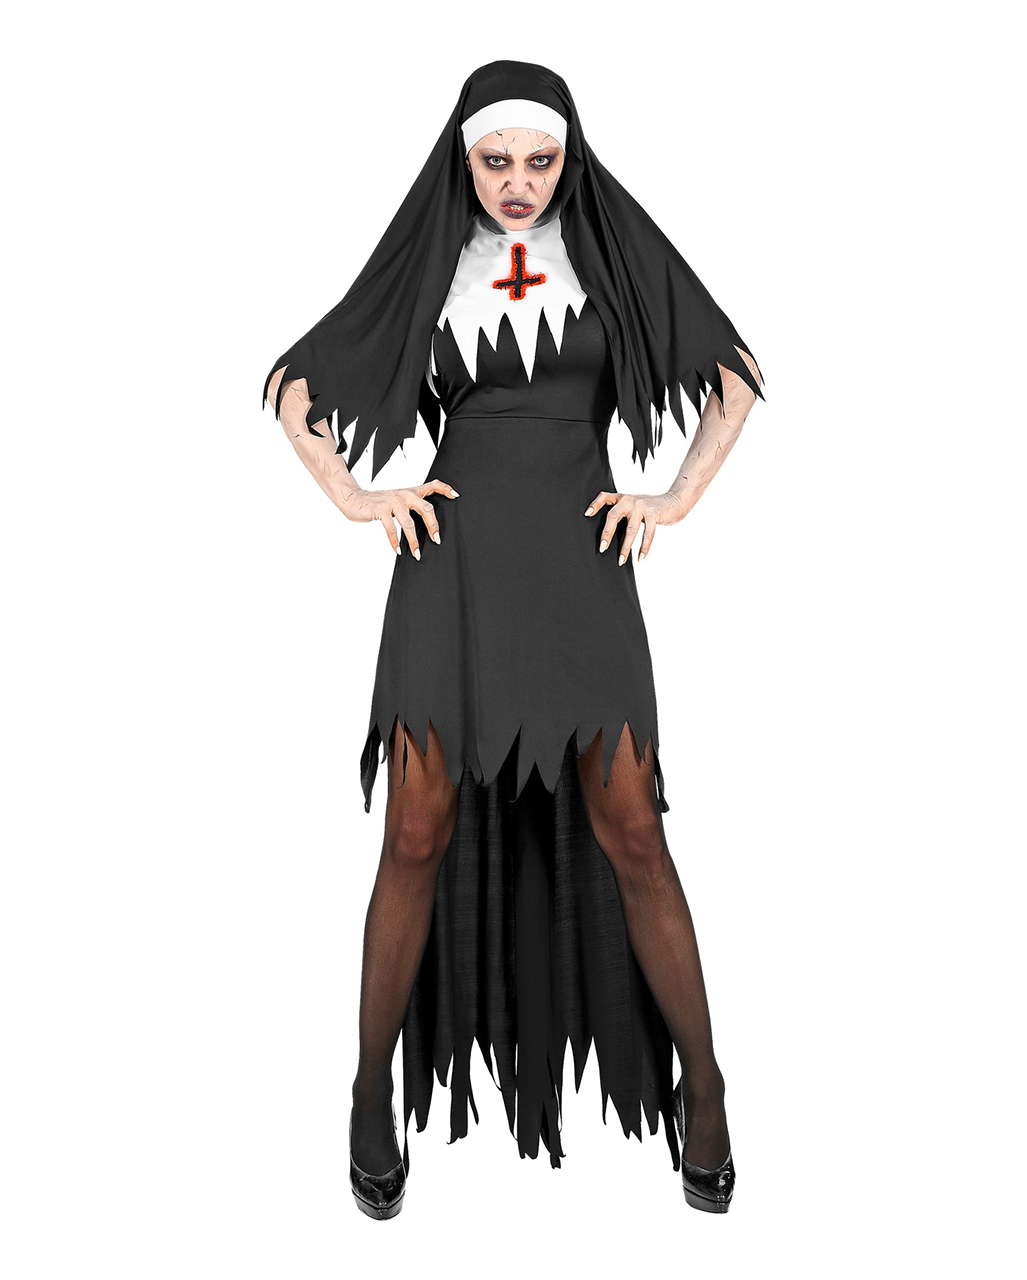 Demonic Nun Costume With Hood on Halloween 